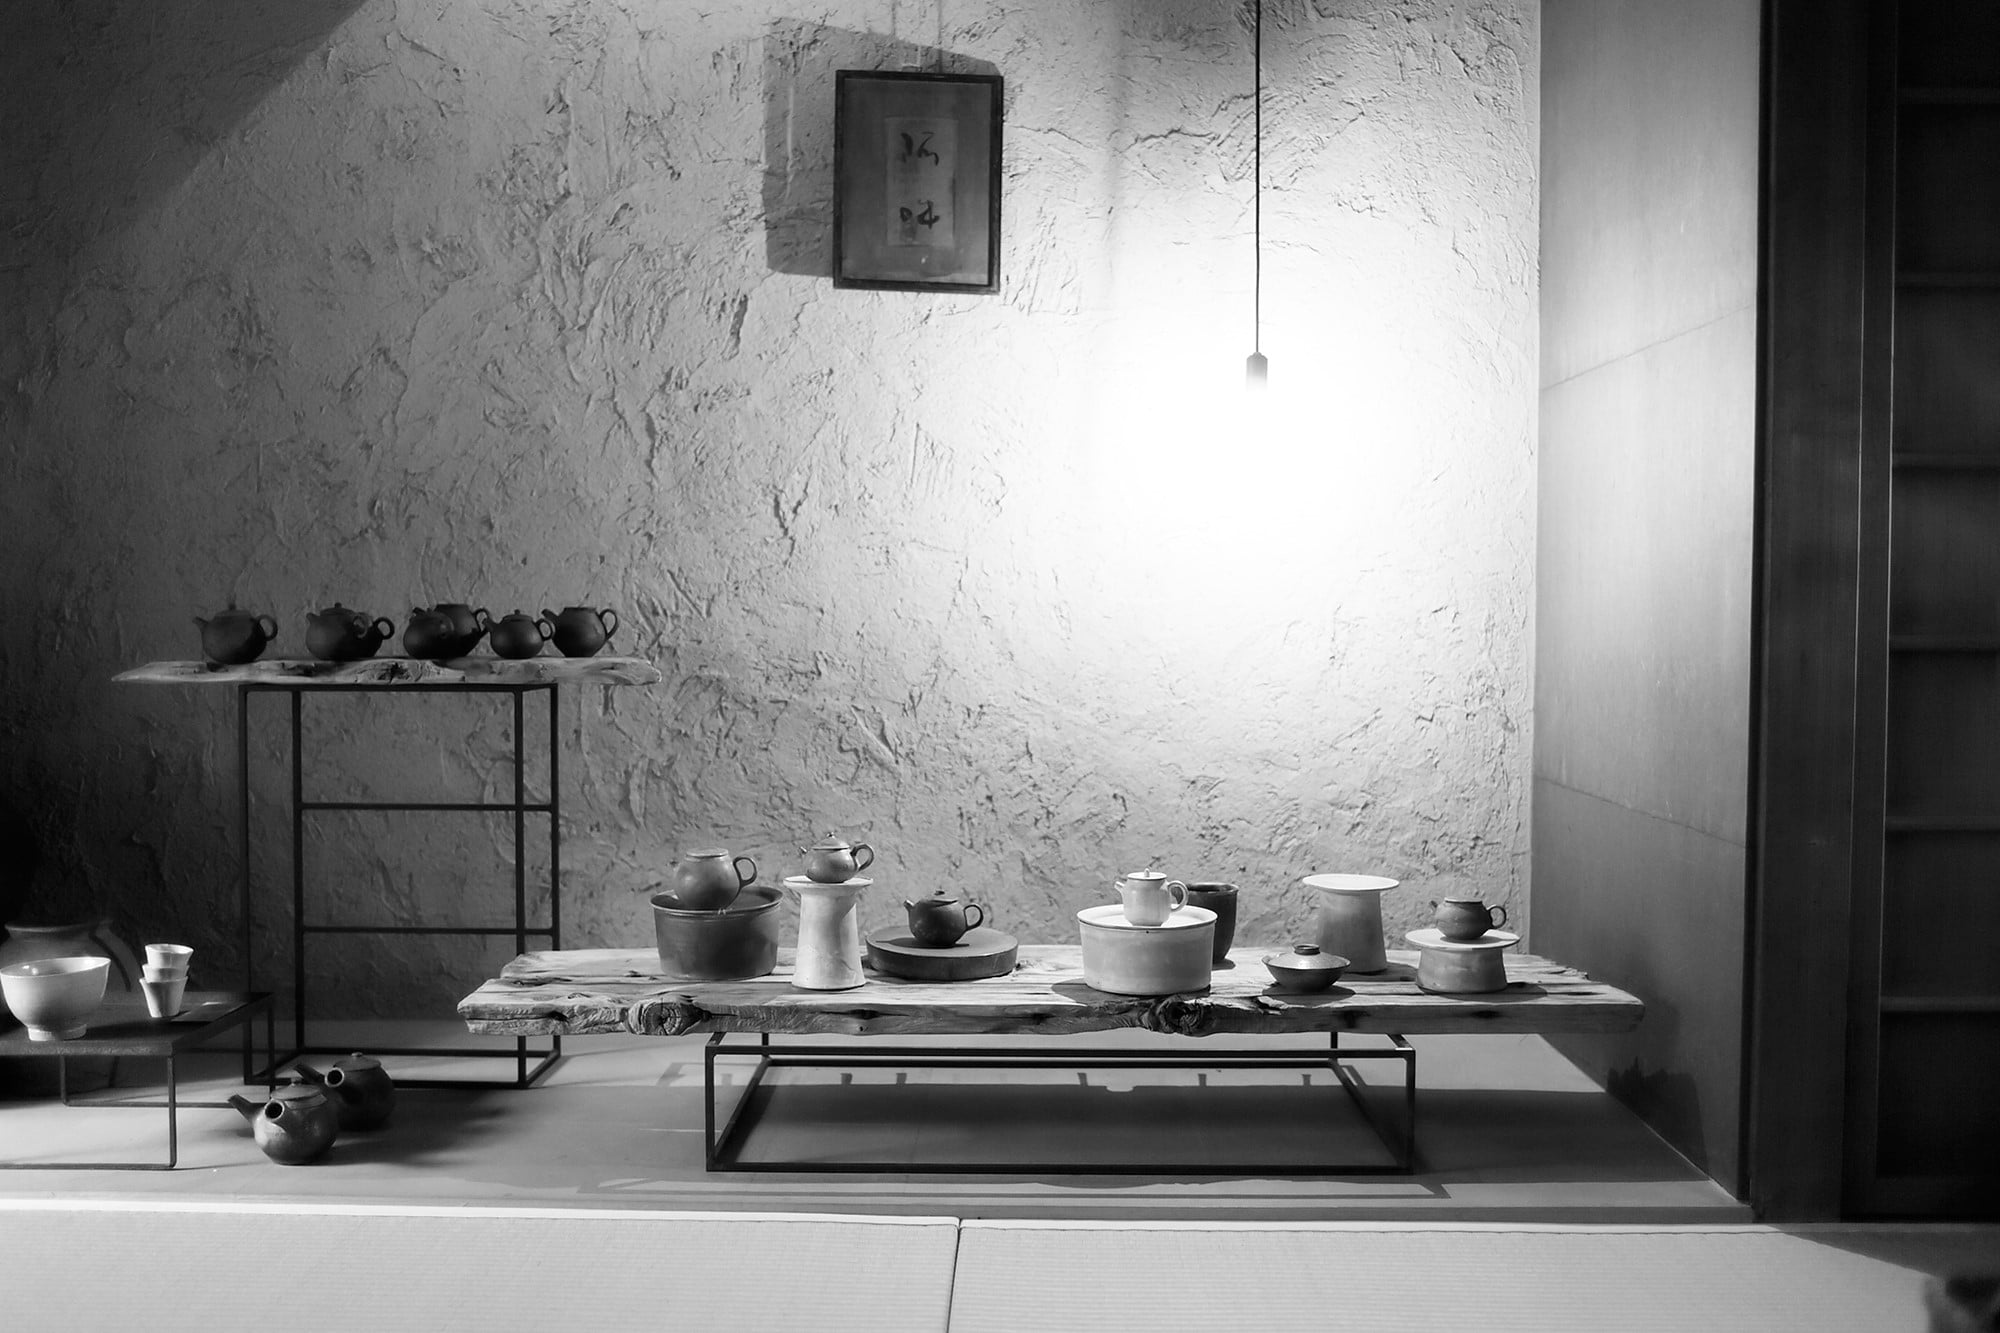 京都小慢１階の茶道具が並ぶ空間。中国茶にまつわる企画展には、作家が特別に作る茶器などここでしか見られないものも多く出展され、評判を呼んでいる。